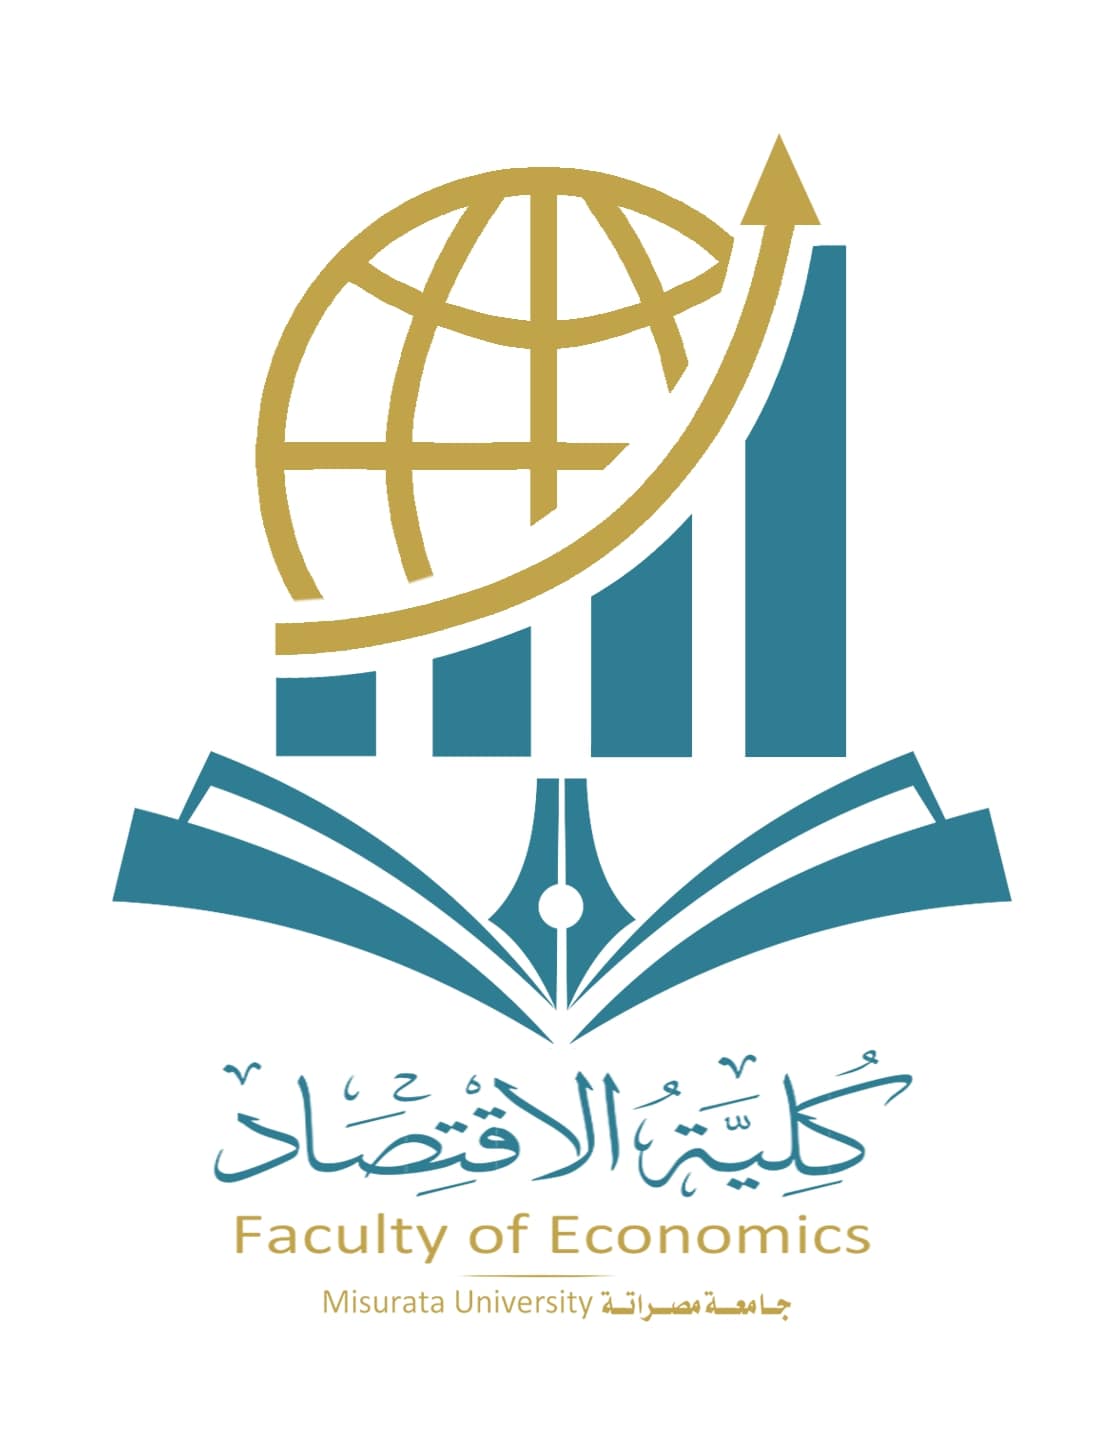  Faculty of Economics platform